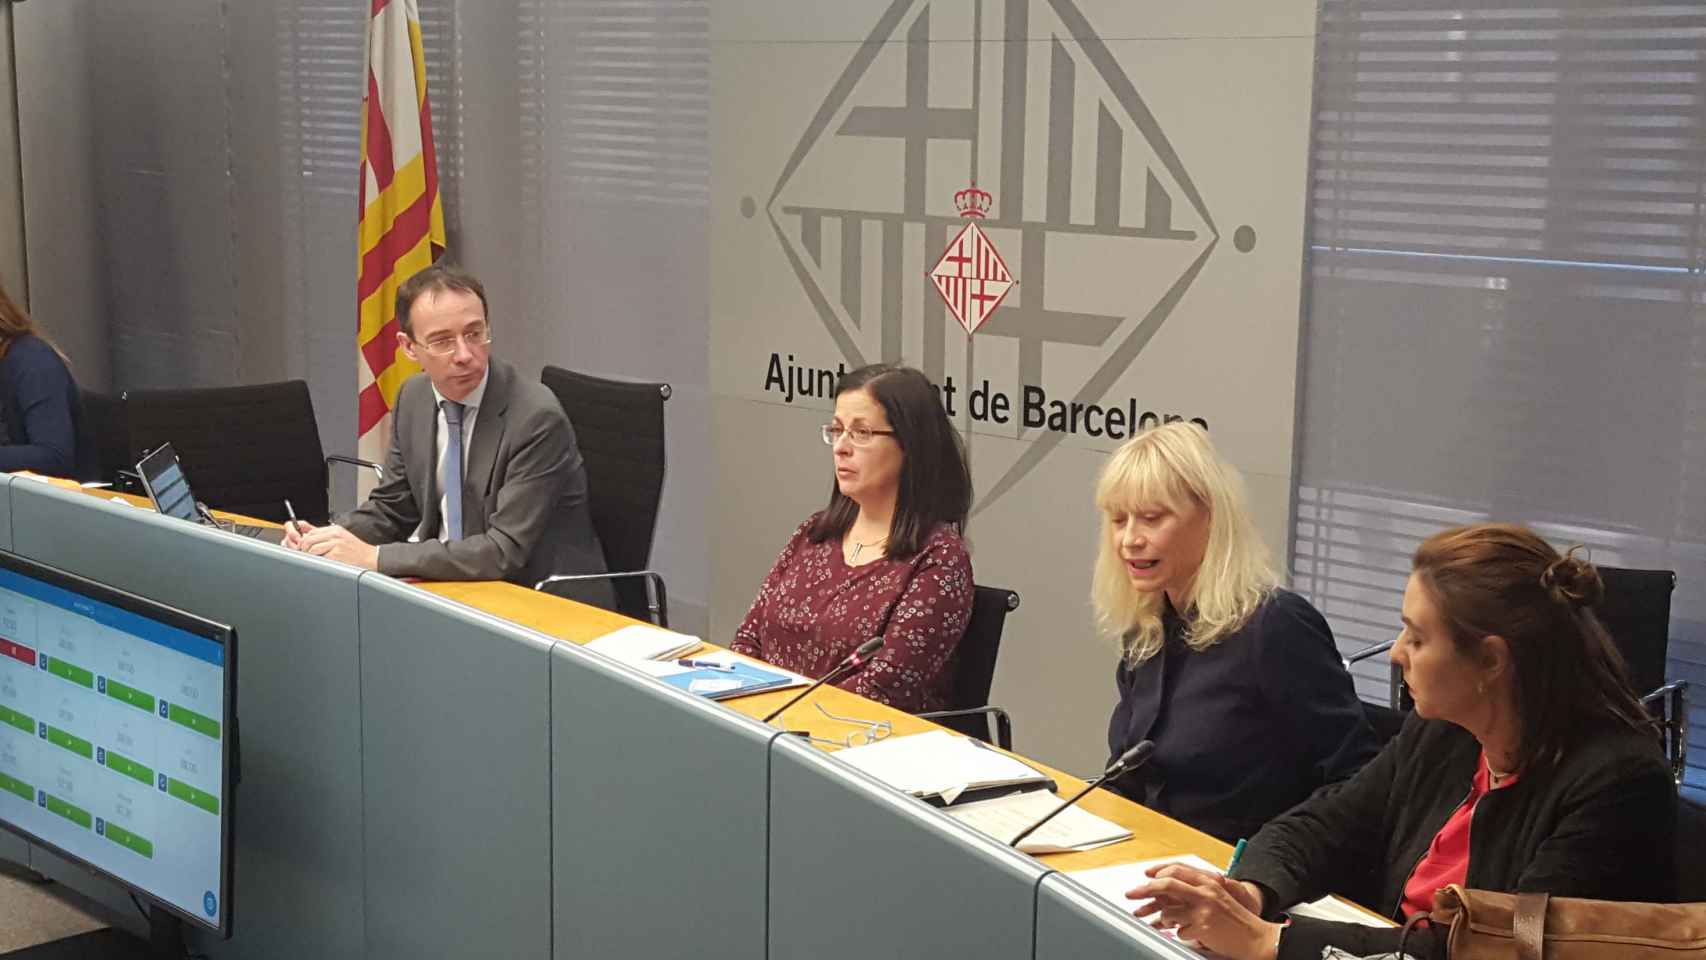 Antifrau investiga al Ayuntamiento de Barcelona por mala gestión / XAVIER ADELL / XAVIER ADELL